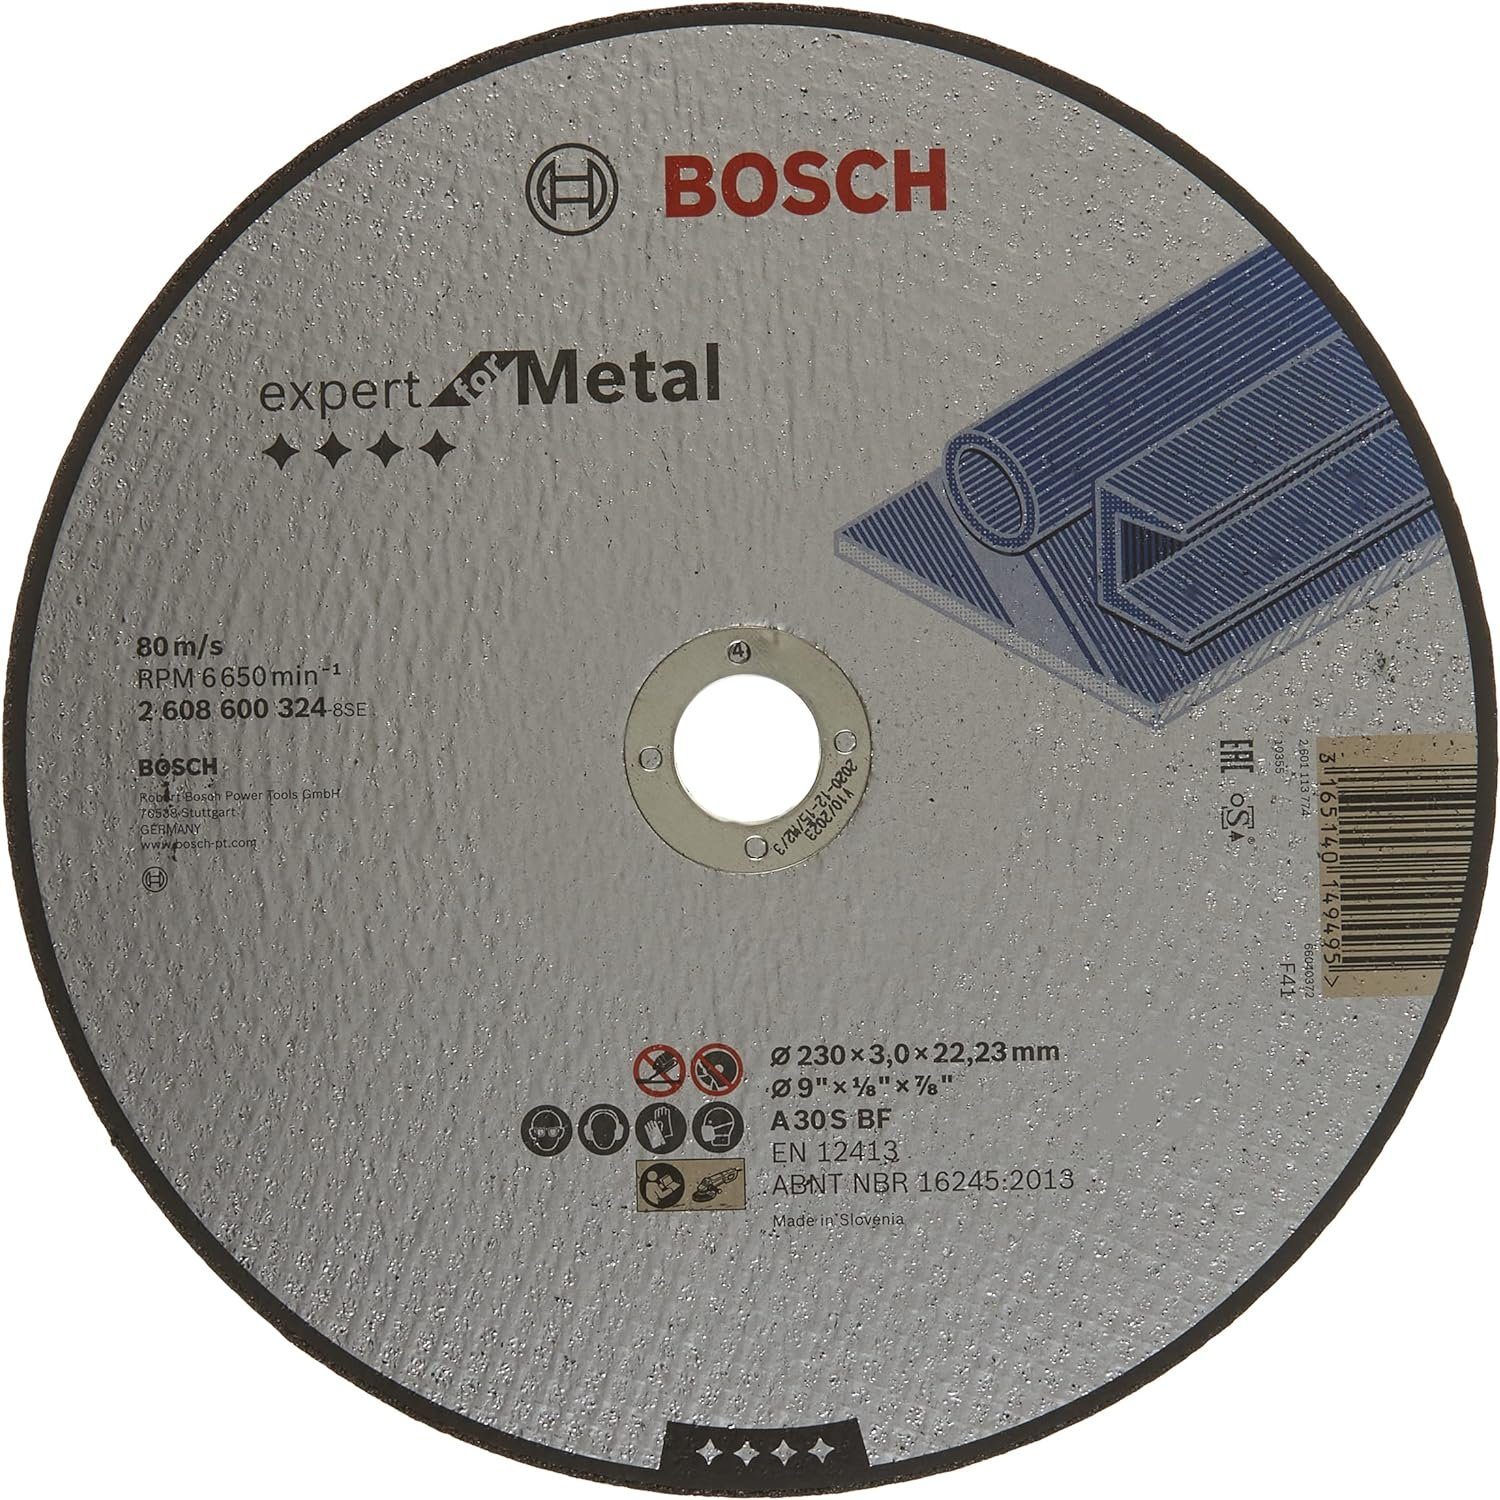 BOSCH Bohrfutter Bosch Professional Schleifzubehör Trennscheibe Ø 230 x 3 mm für.Metall